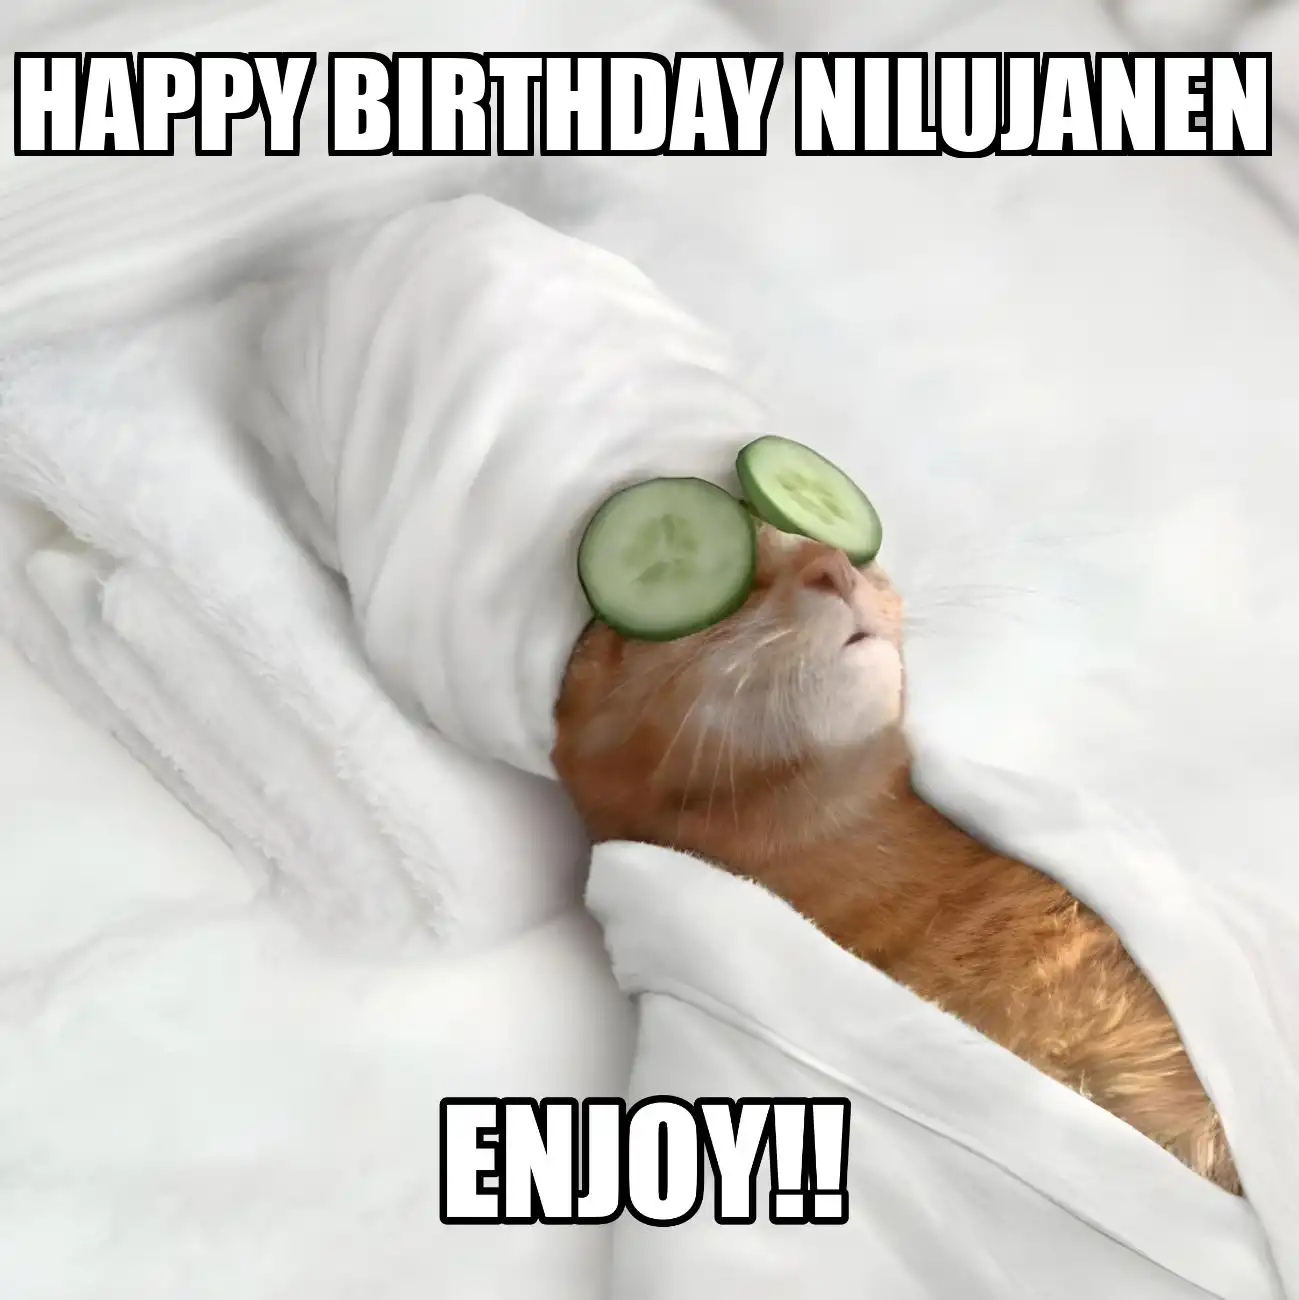 Happy Birthday Nilujanen Enjoy Cat Meme